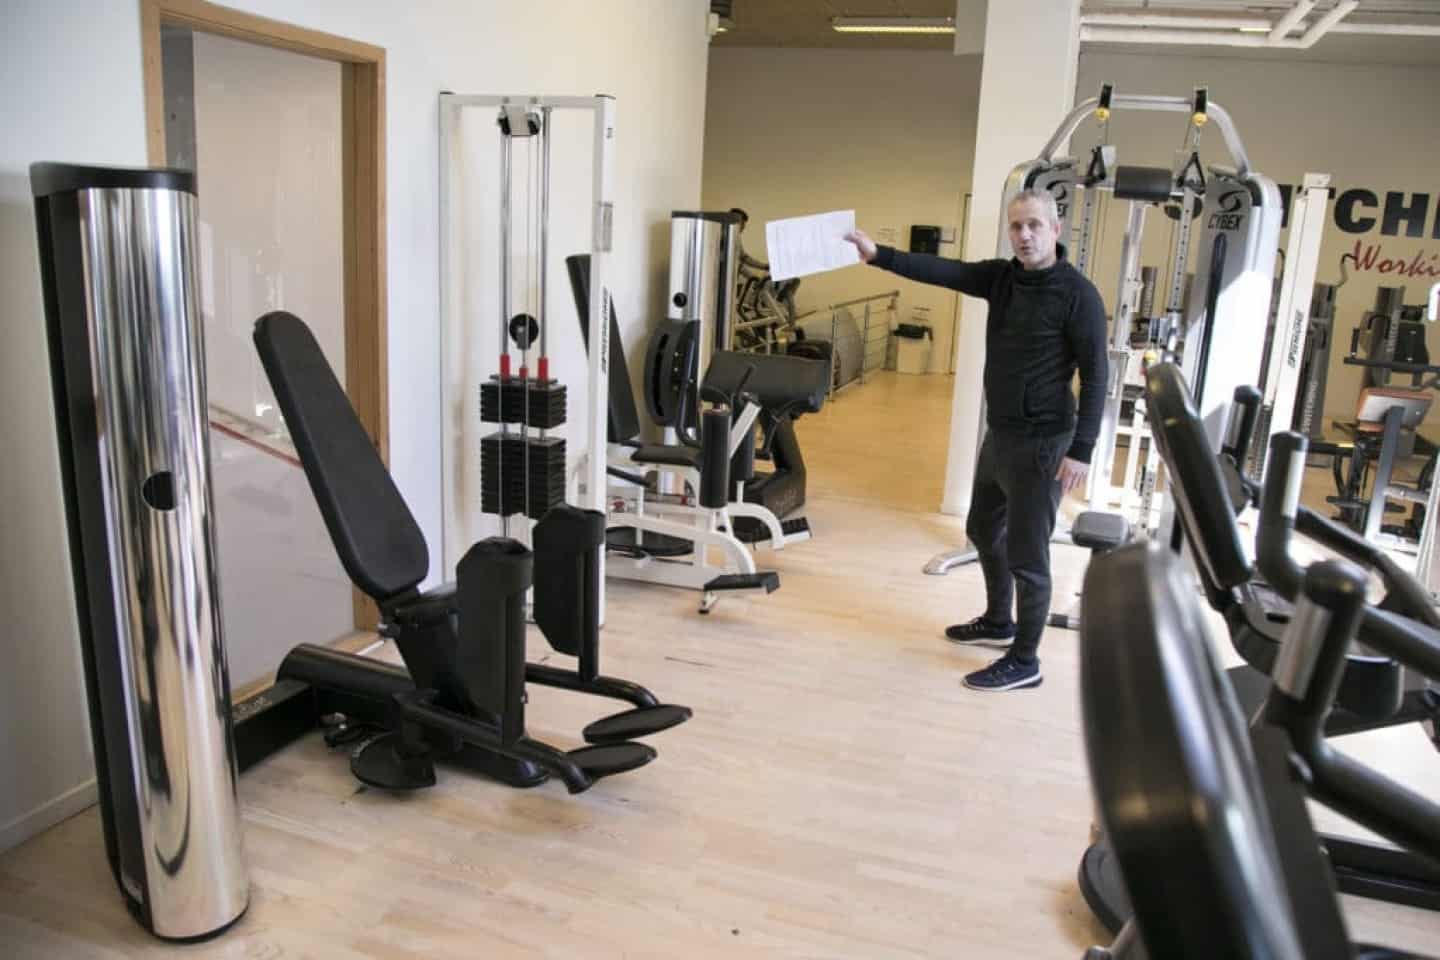 bekæmpe værtinde Glimte Investerer i fitness-center: "Håber, det bliver et løft til hele kvarteret"  | helsingordagblad.dk